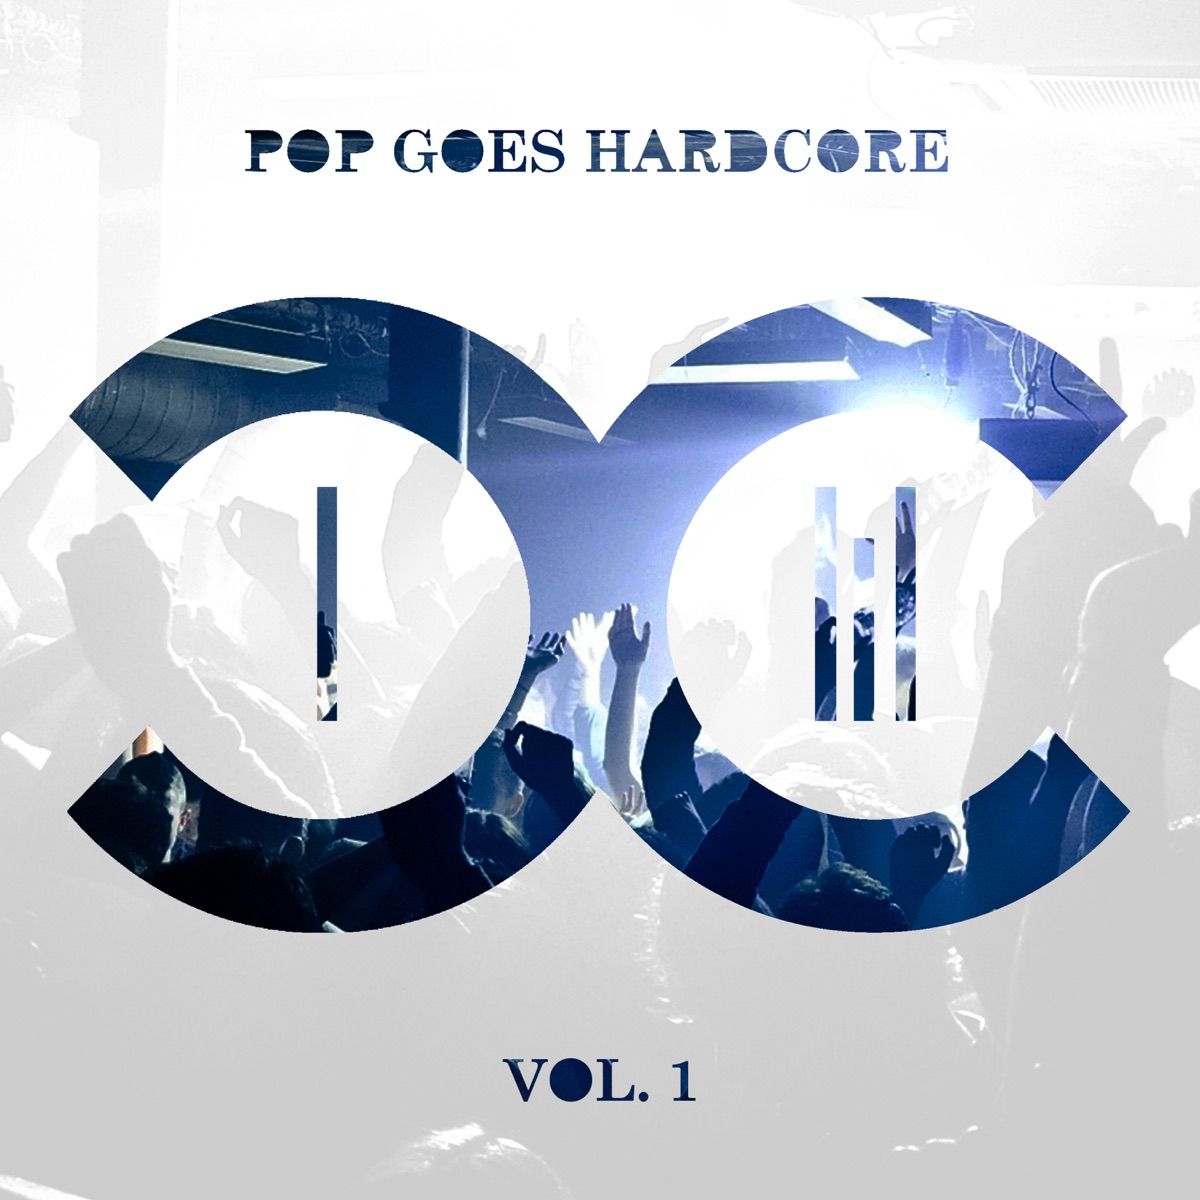 Pop Goes Hardcore, Vol. 2 - Album by DCCM - Apple Music